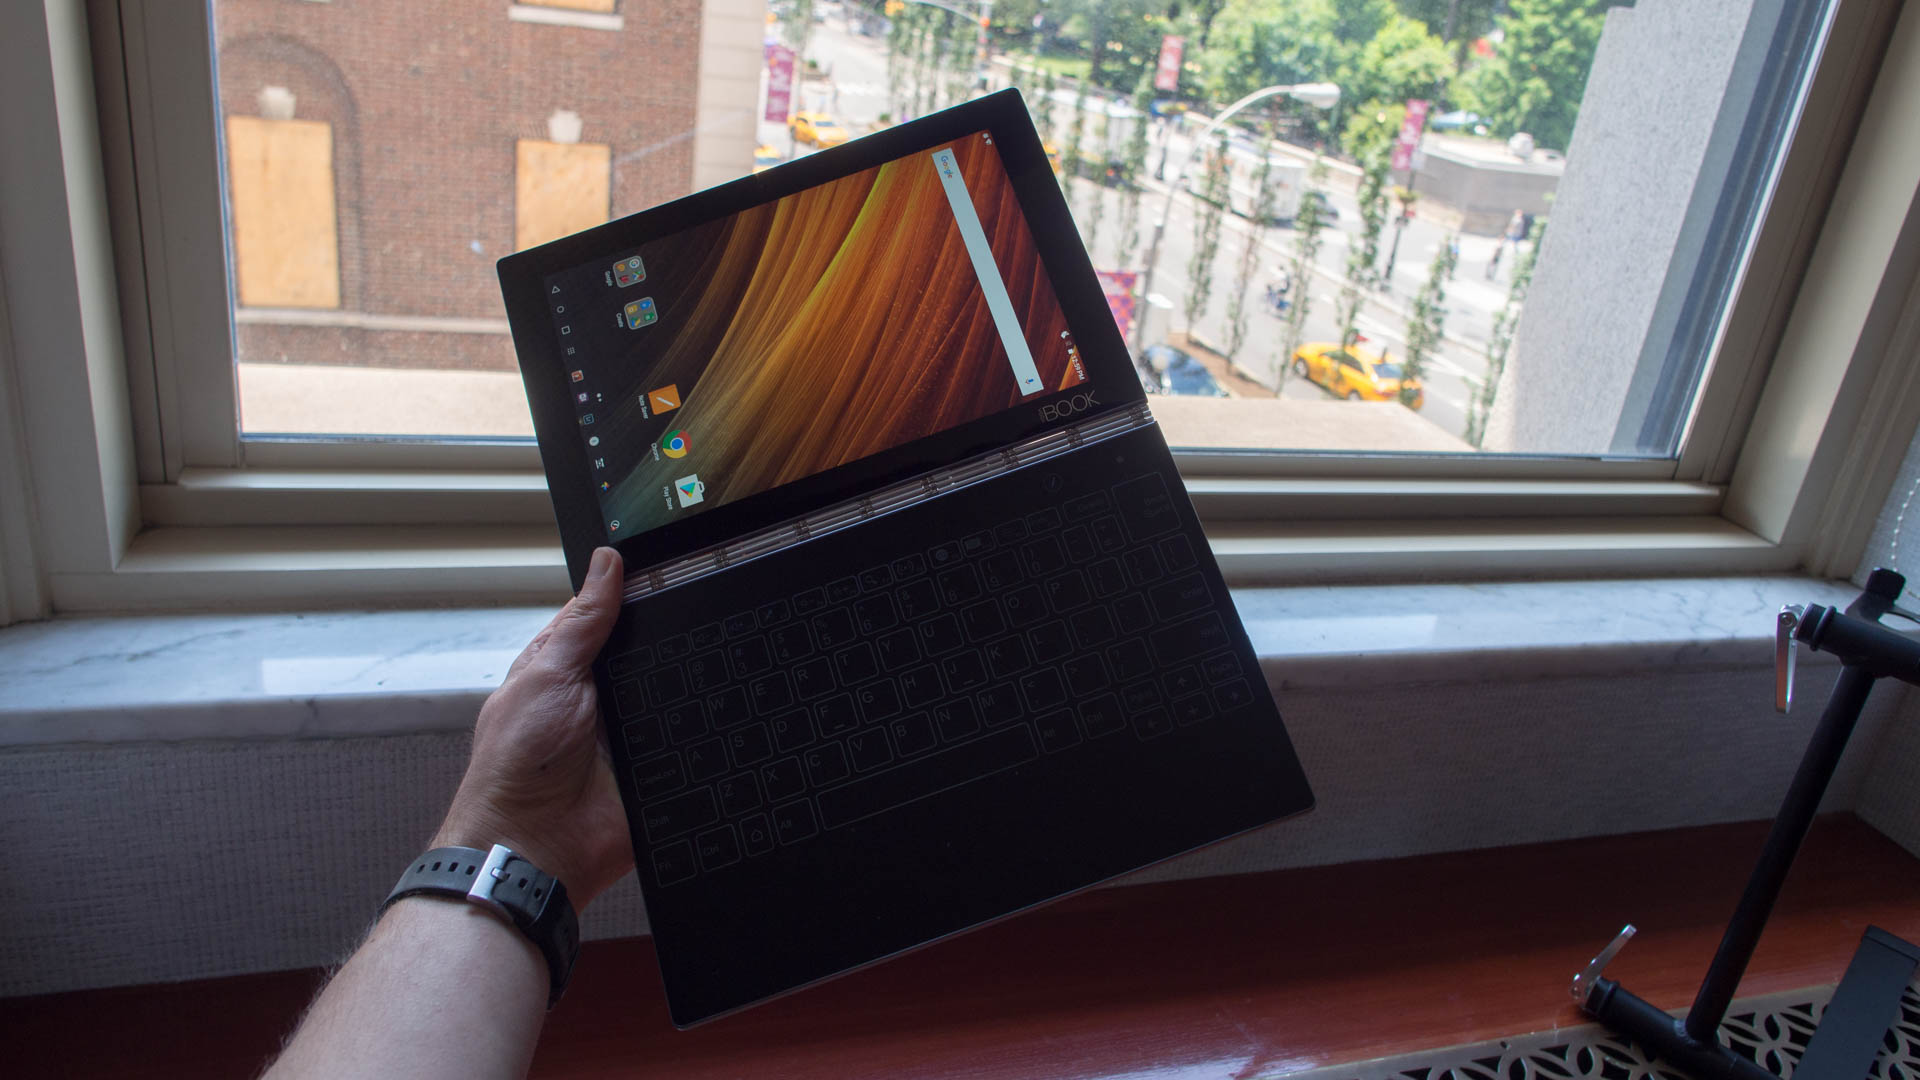 The Lenovo Yoga Book finally makes dual screen tablets a reality | TechRadar